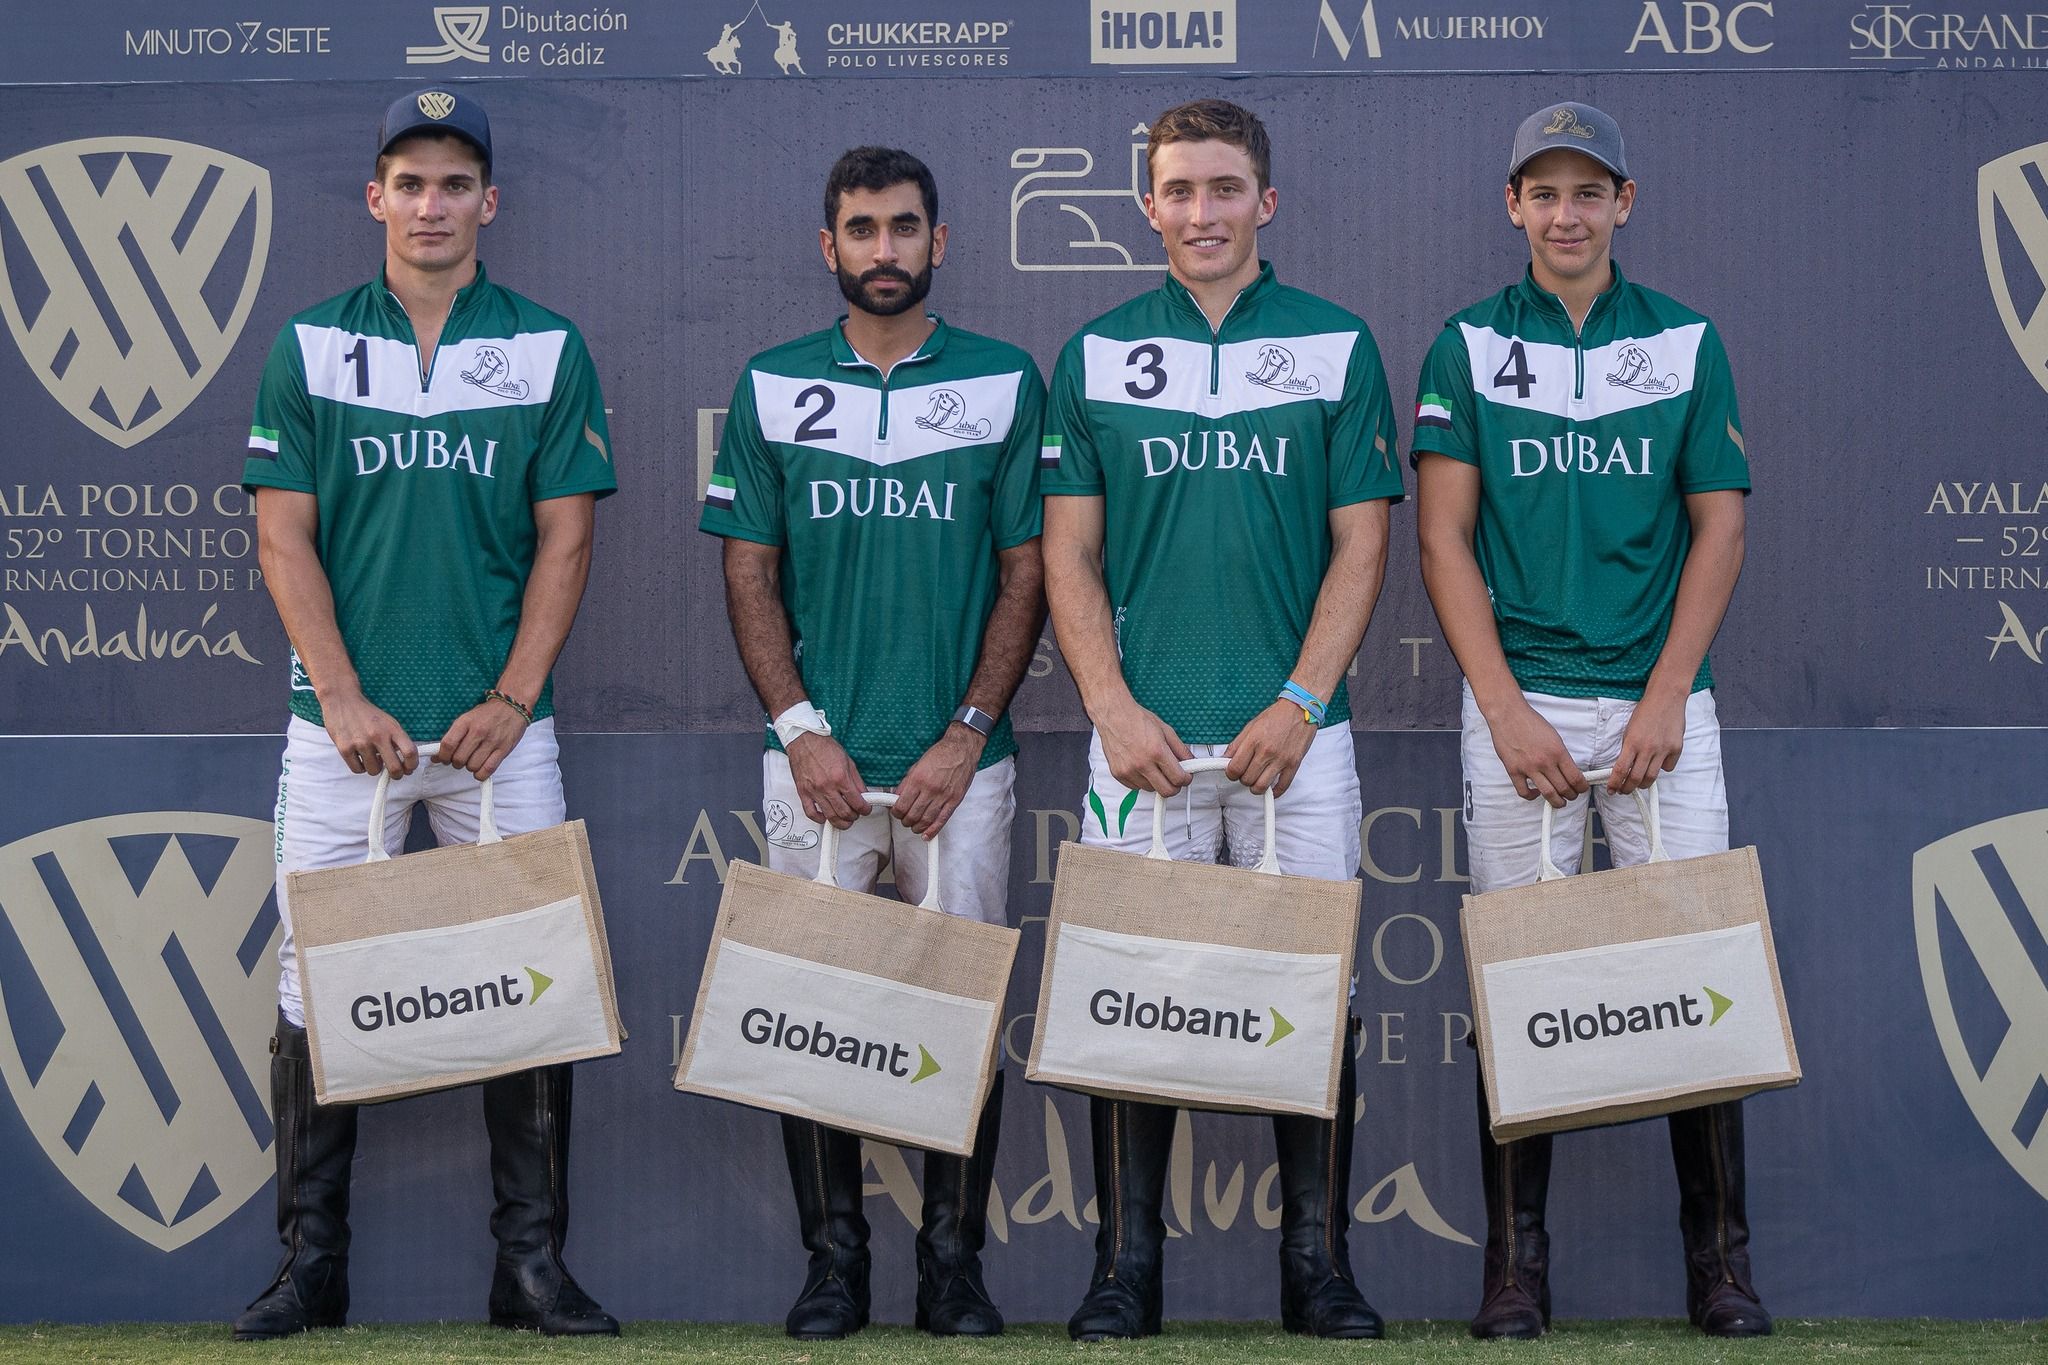 Lo cuatro componentes de Dubai, campeón de la Copa 'Globant' de Alto Hándicap